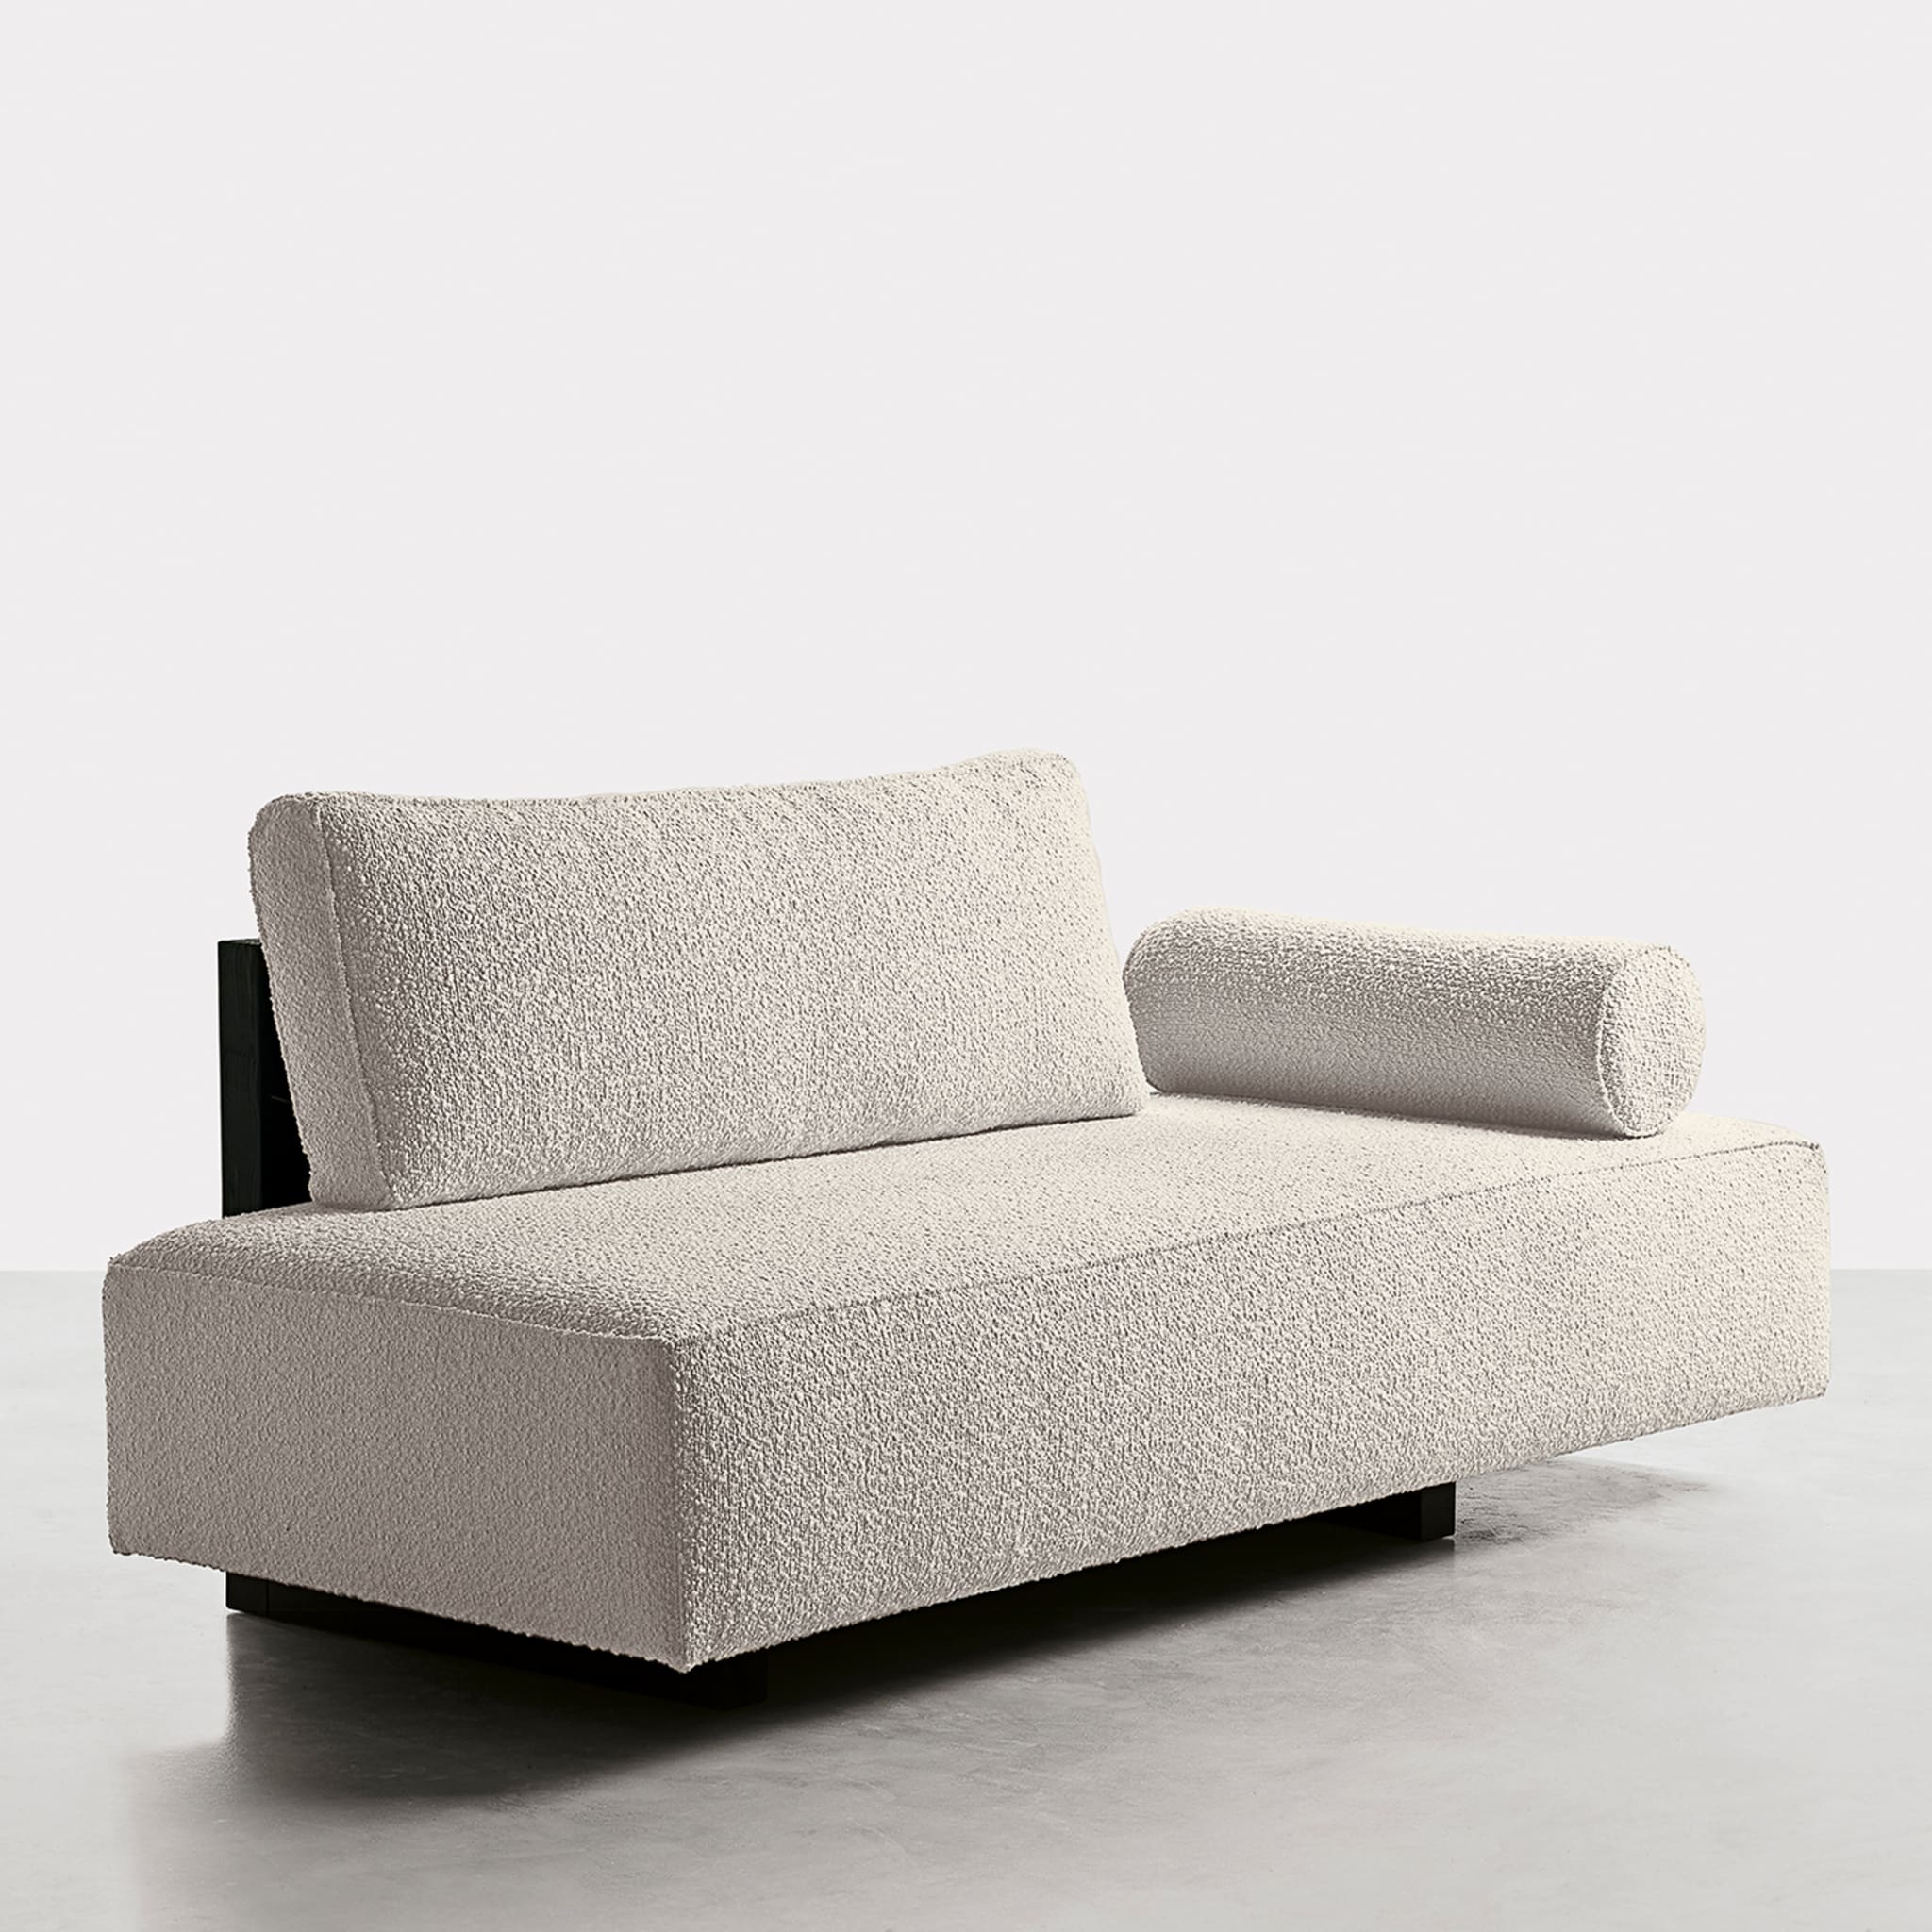 Zelig White Sofa by Dainelli Studio - Alternative view 1